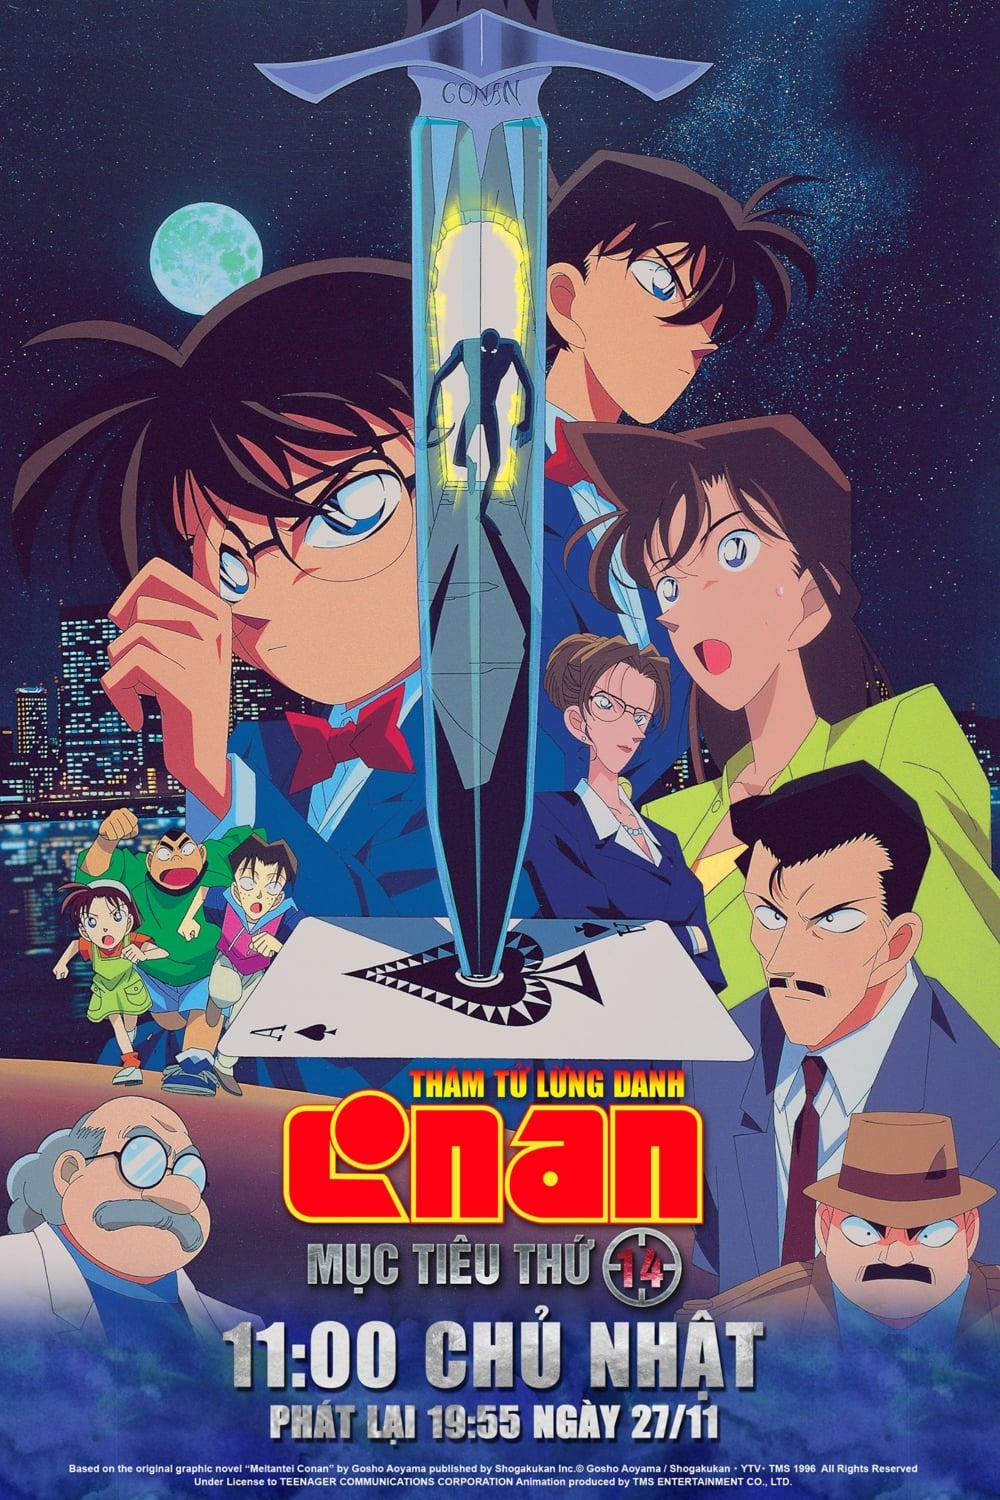 Thám Tử Lừng Danh Conan 2: Mục Tiêu Thứ 14 (Detective Conan: The Fourteenth Target) [1998]